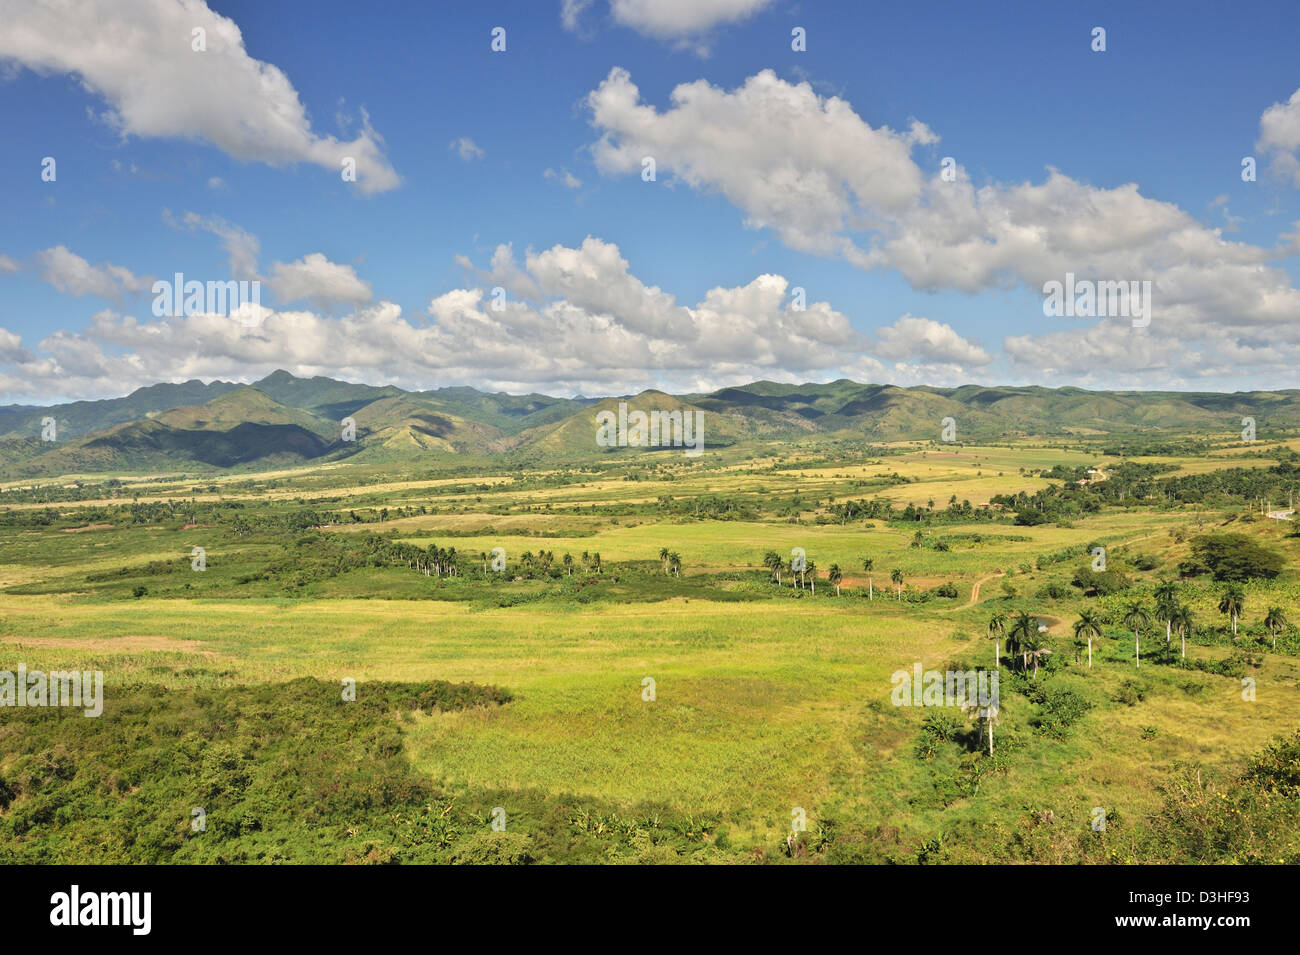 Mirador de La Loma del Puerto viewpoint with a view over the Sugar Mills Valley near Trinidad, Cuba Stock Photo